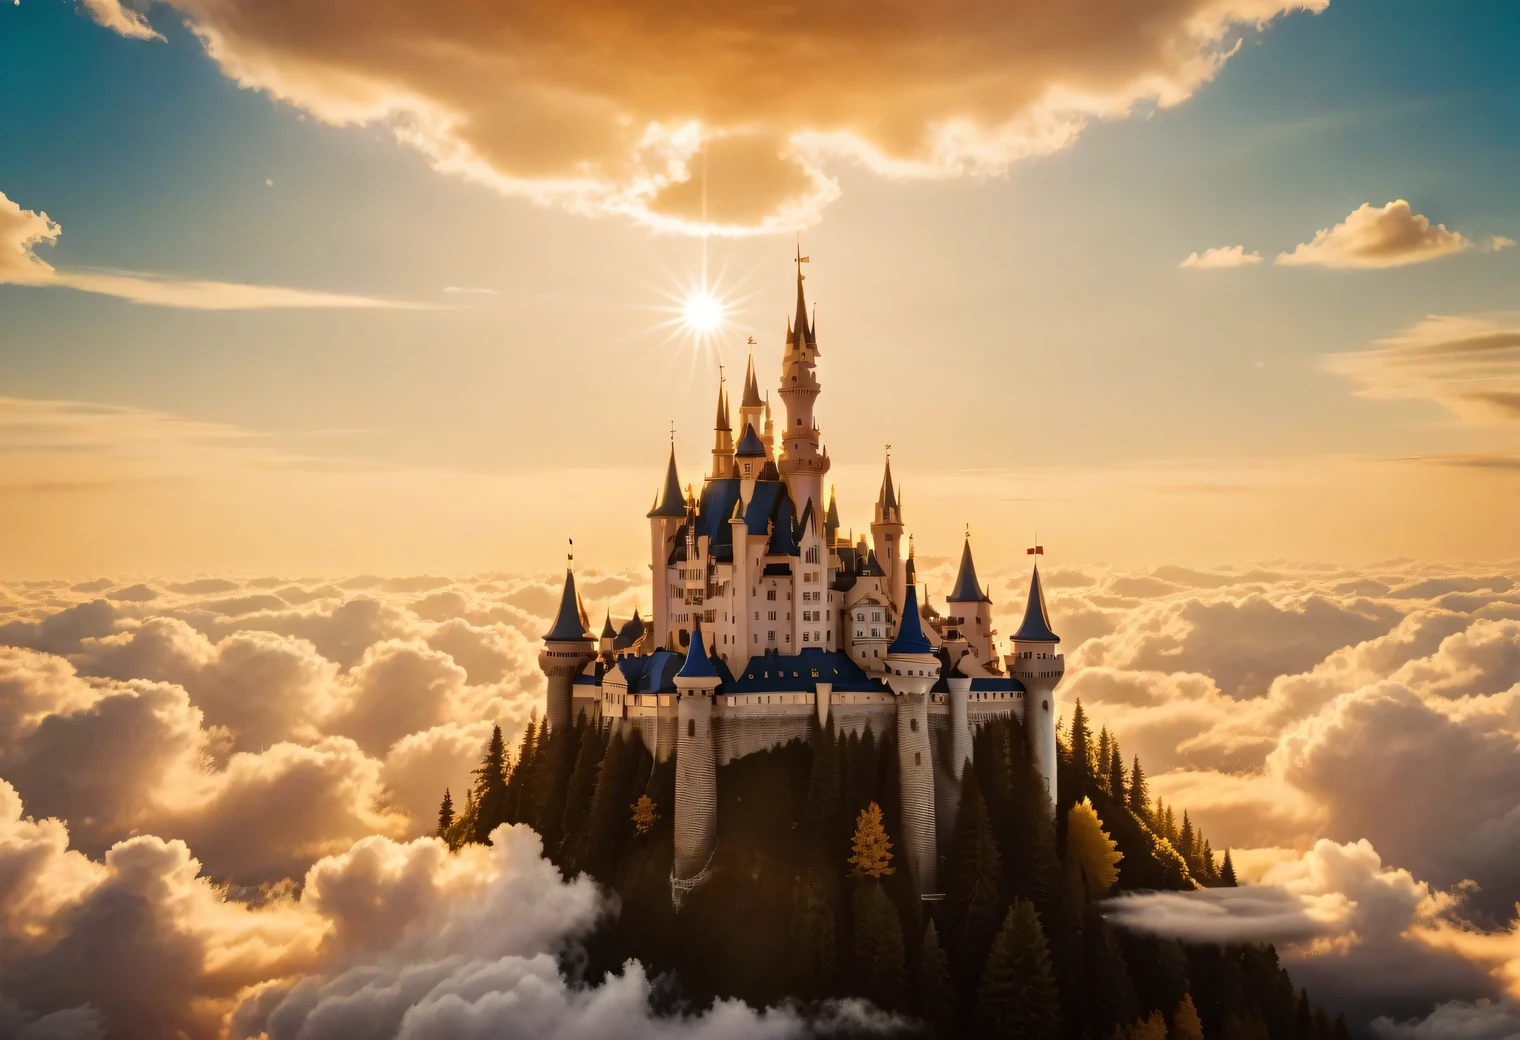 การถ่ายภาพแบบอะนาล็อก, มีปราสาทในฝันที่ส่องแสงอยู่บนท้องฟ้าท่ามกลางหมู่เมฆ, Dream Castle มีความสวยงามและวิจิตรงดงามมาก ล้อมรอบด้วยเมฆ แสงสีทอง และแสงสีทอง, แสงสีทองเปล่งประกายจากปราสาทแห่งความฝัน, เหมือนจริง, รายละเอียด, ความละเอียดสูง, 32ก,ภาพถ่ายอะนาล็อก